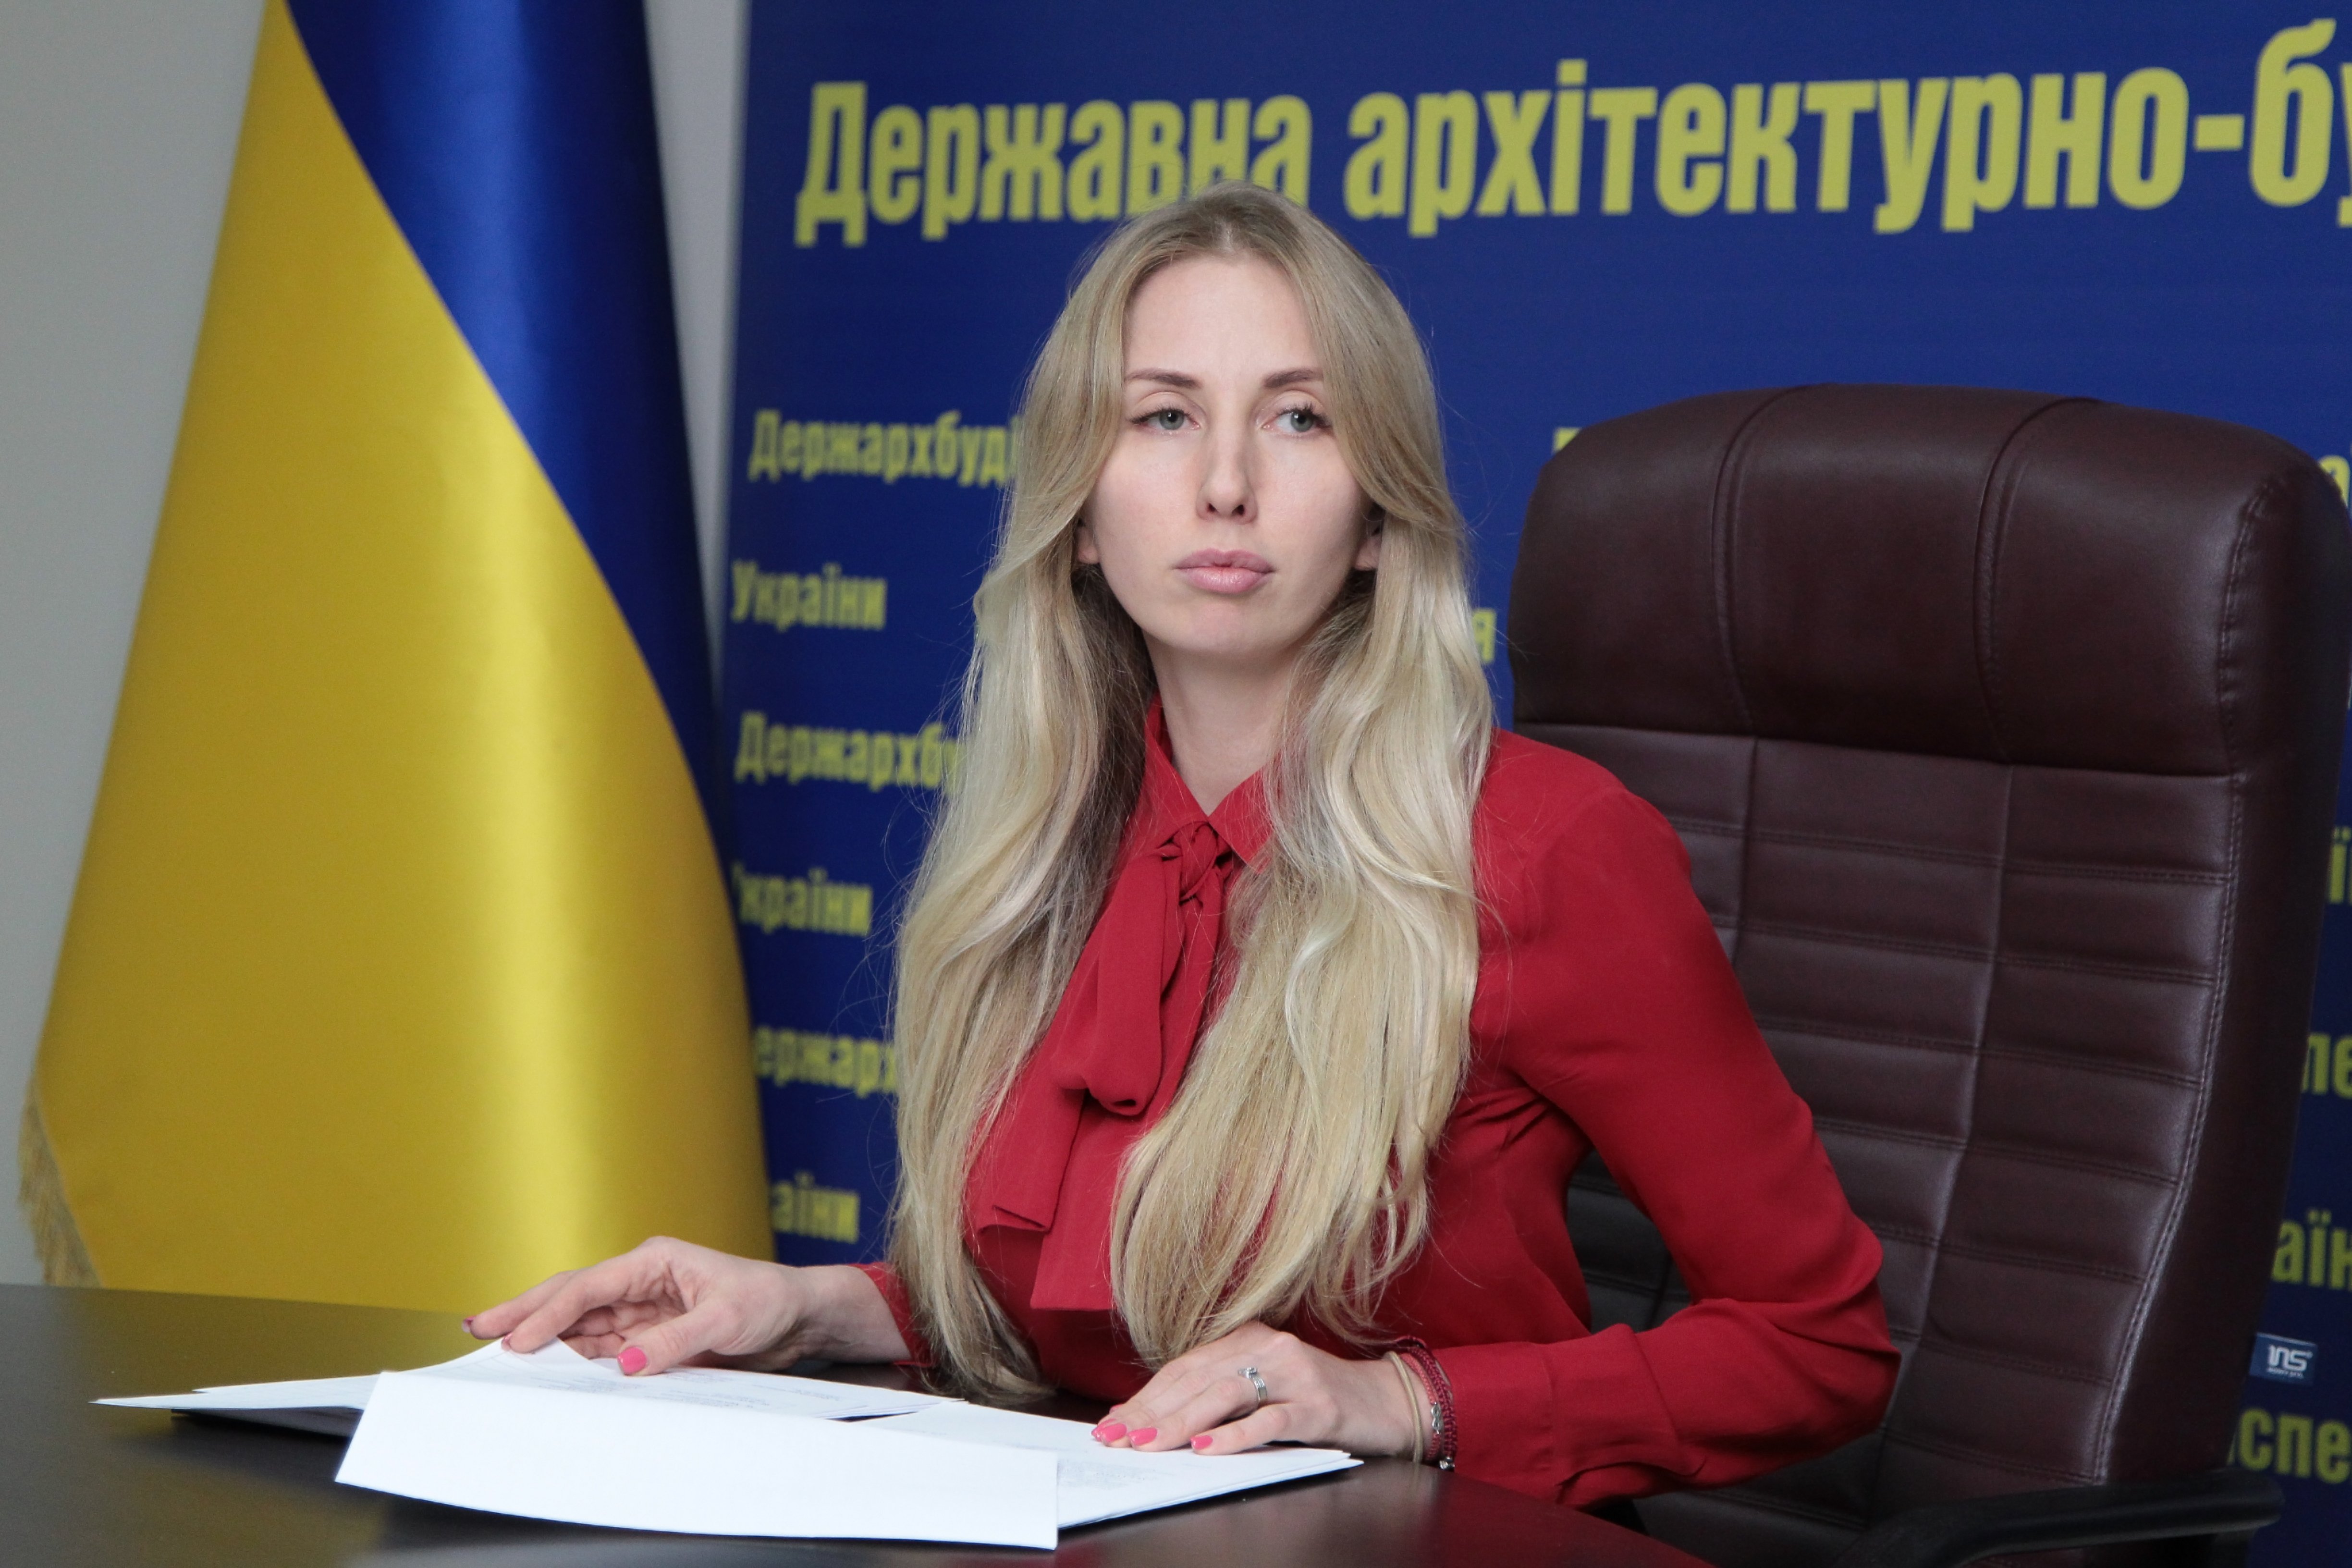 Елена Костенко вызвала на ковер руководителей террорганов ГАСИ: проблемы в областях должны быть решены